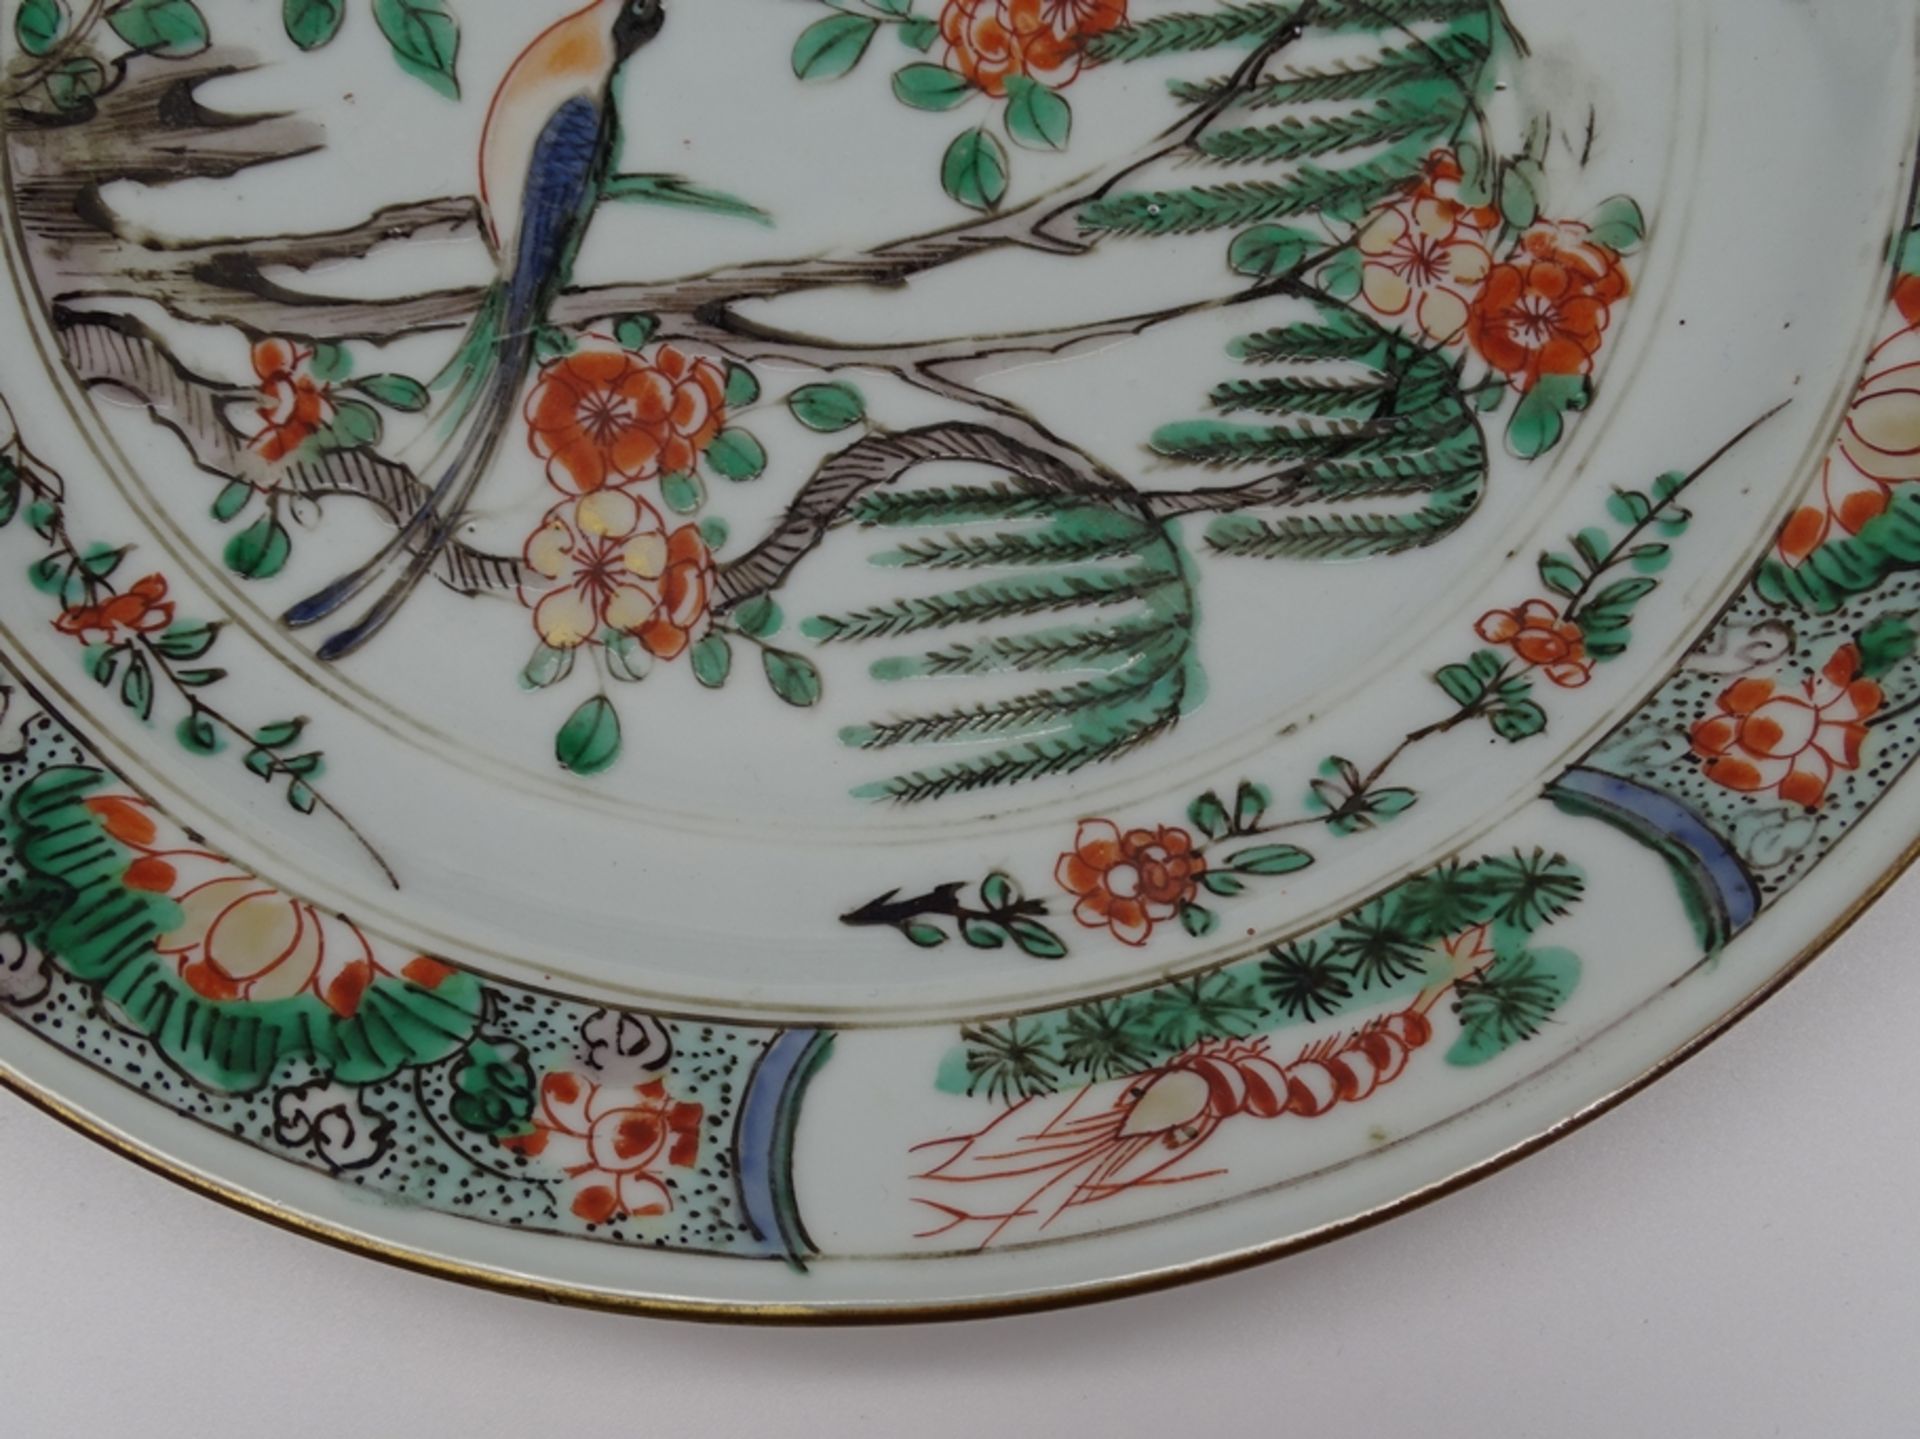 Großer Teller mit Vogel und Blumenmotiven,China, älter, D. 24cm, geklebte Stellen - Bild 5 aus 11